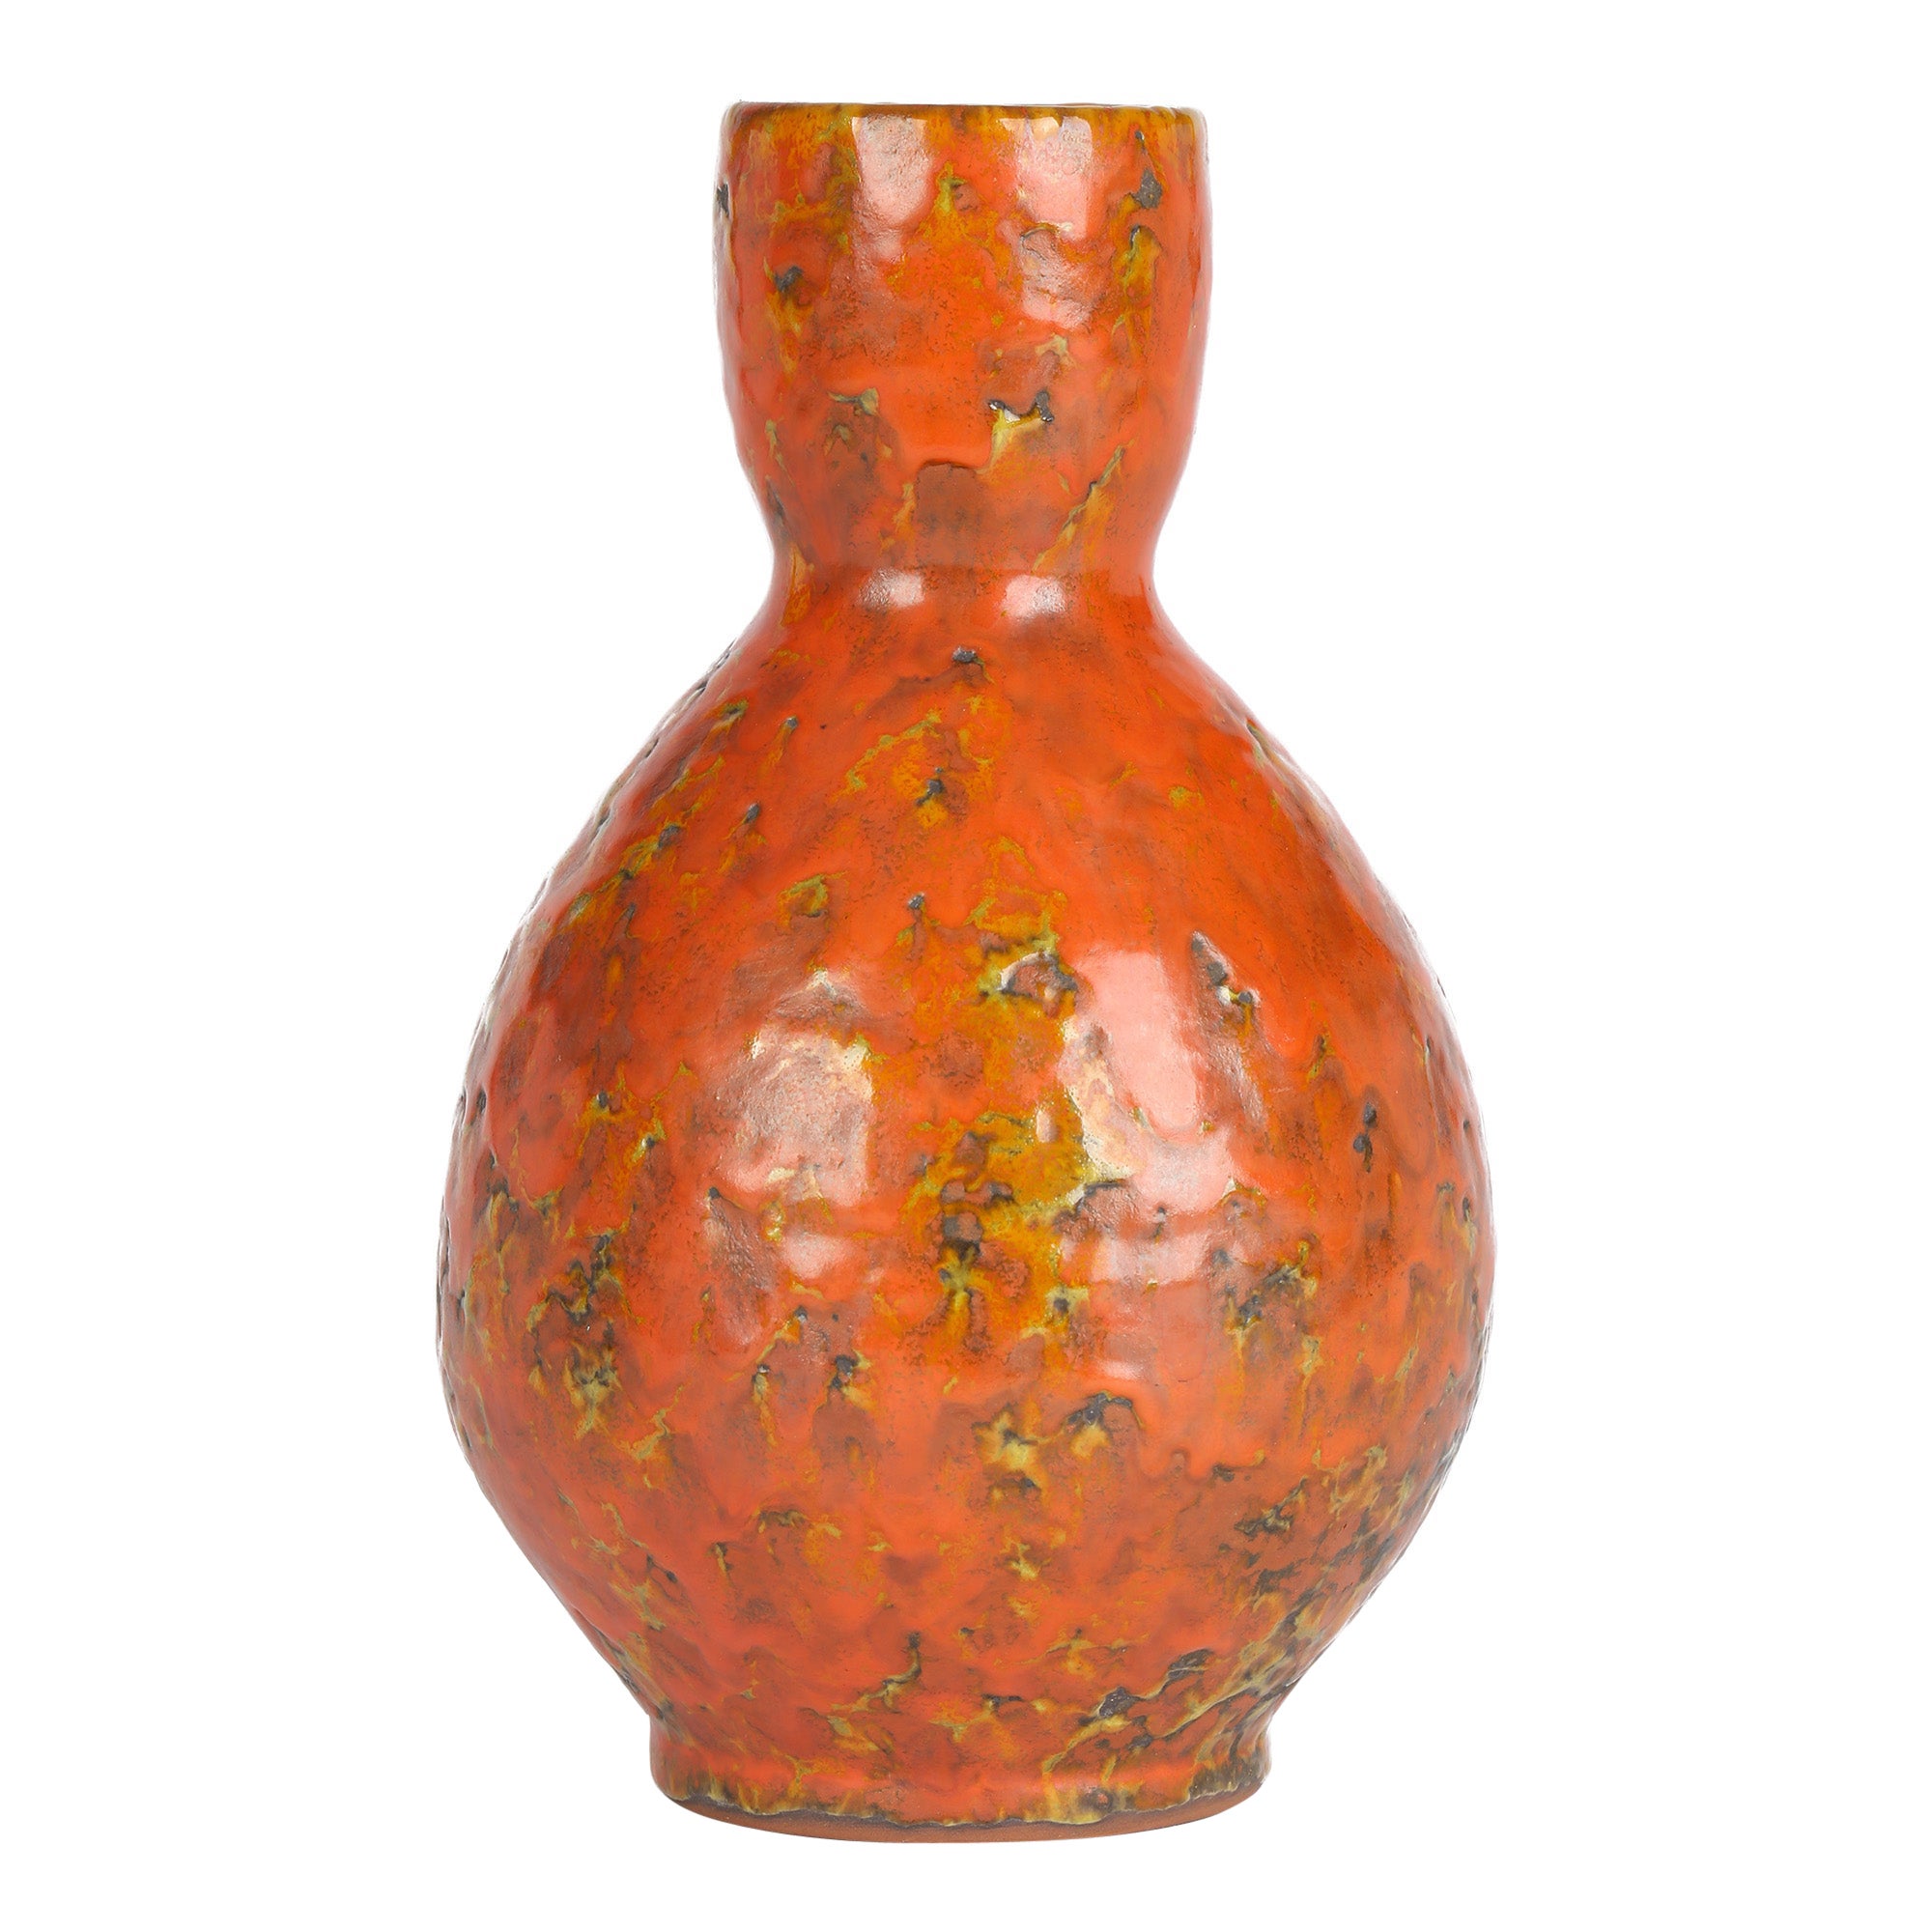 Vase en poterie d'art texturée orange de style continental, probablement allemand, datant du milieu du siècle dernier